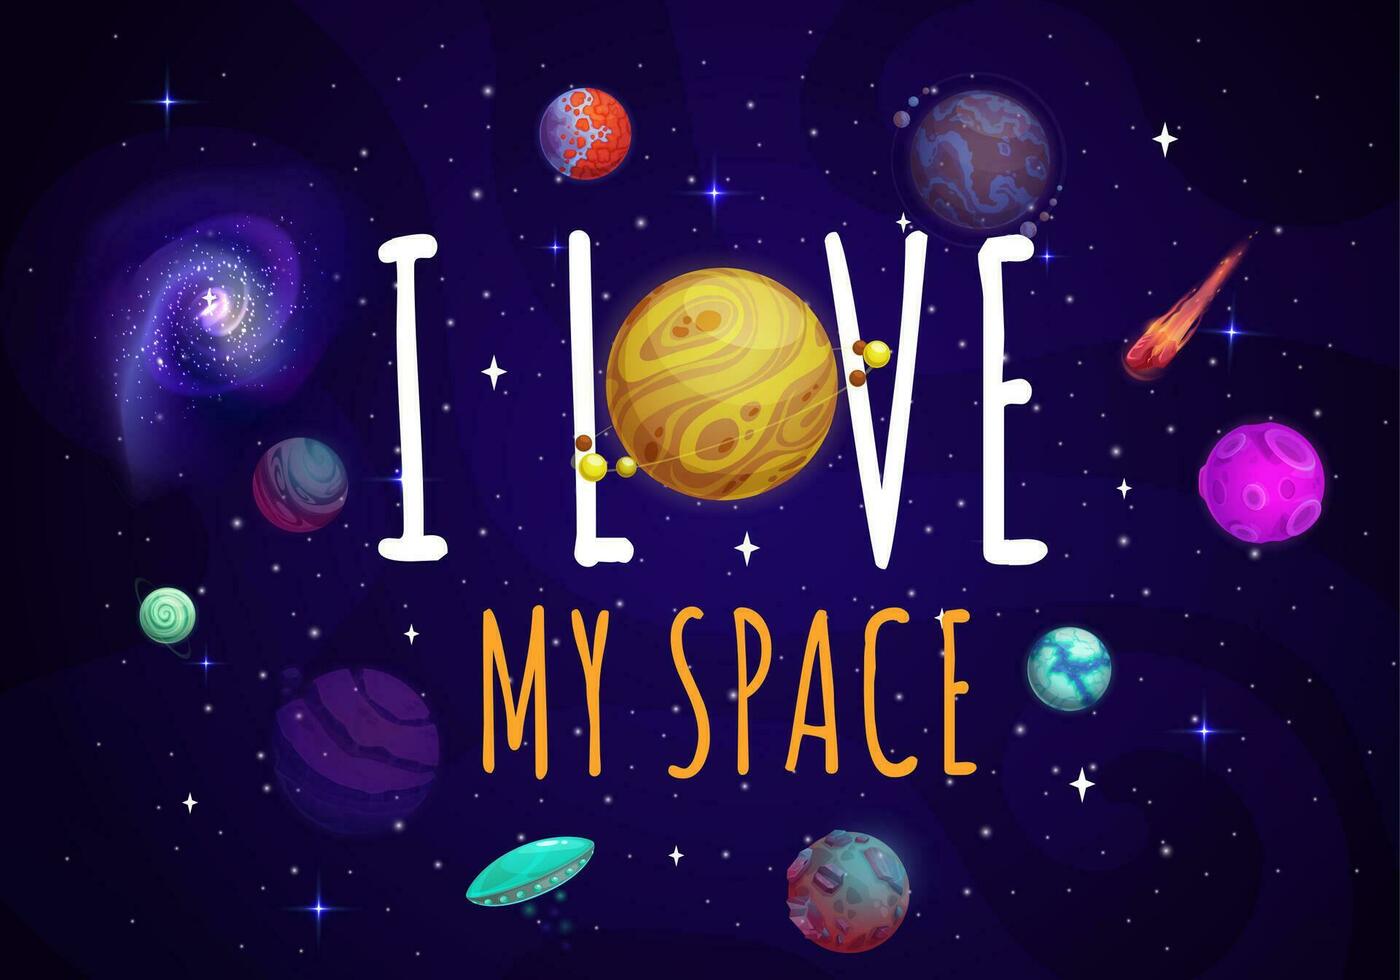 Eu amor meu espaço citar. estrelado galáxia com planetas vetor